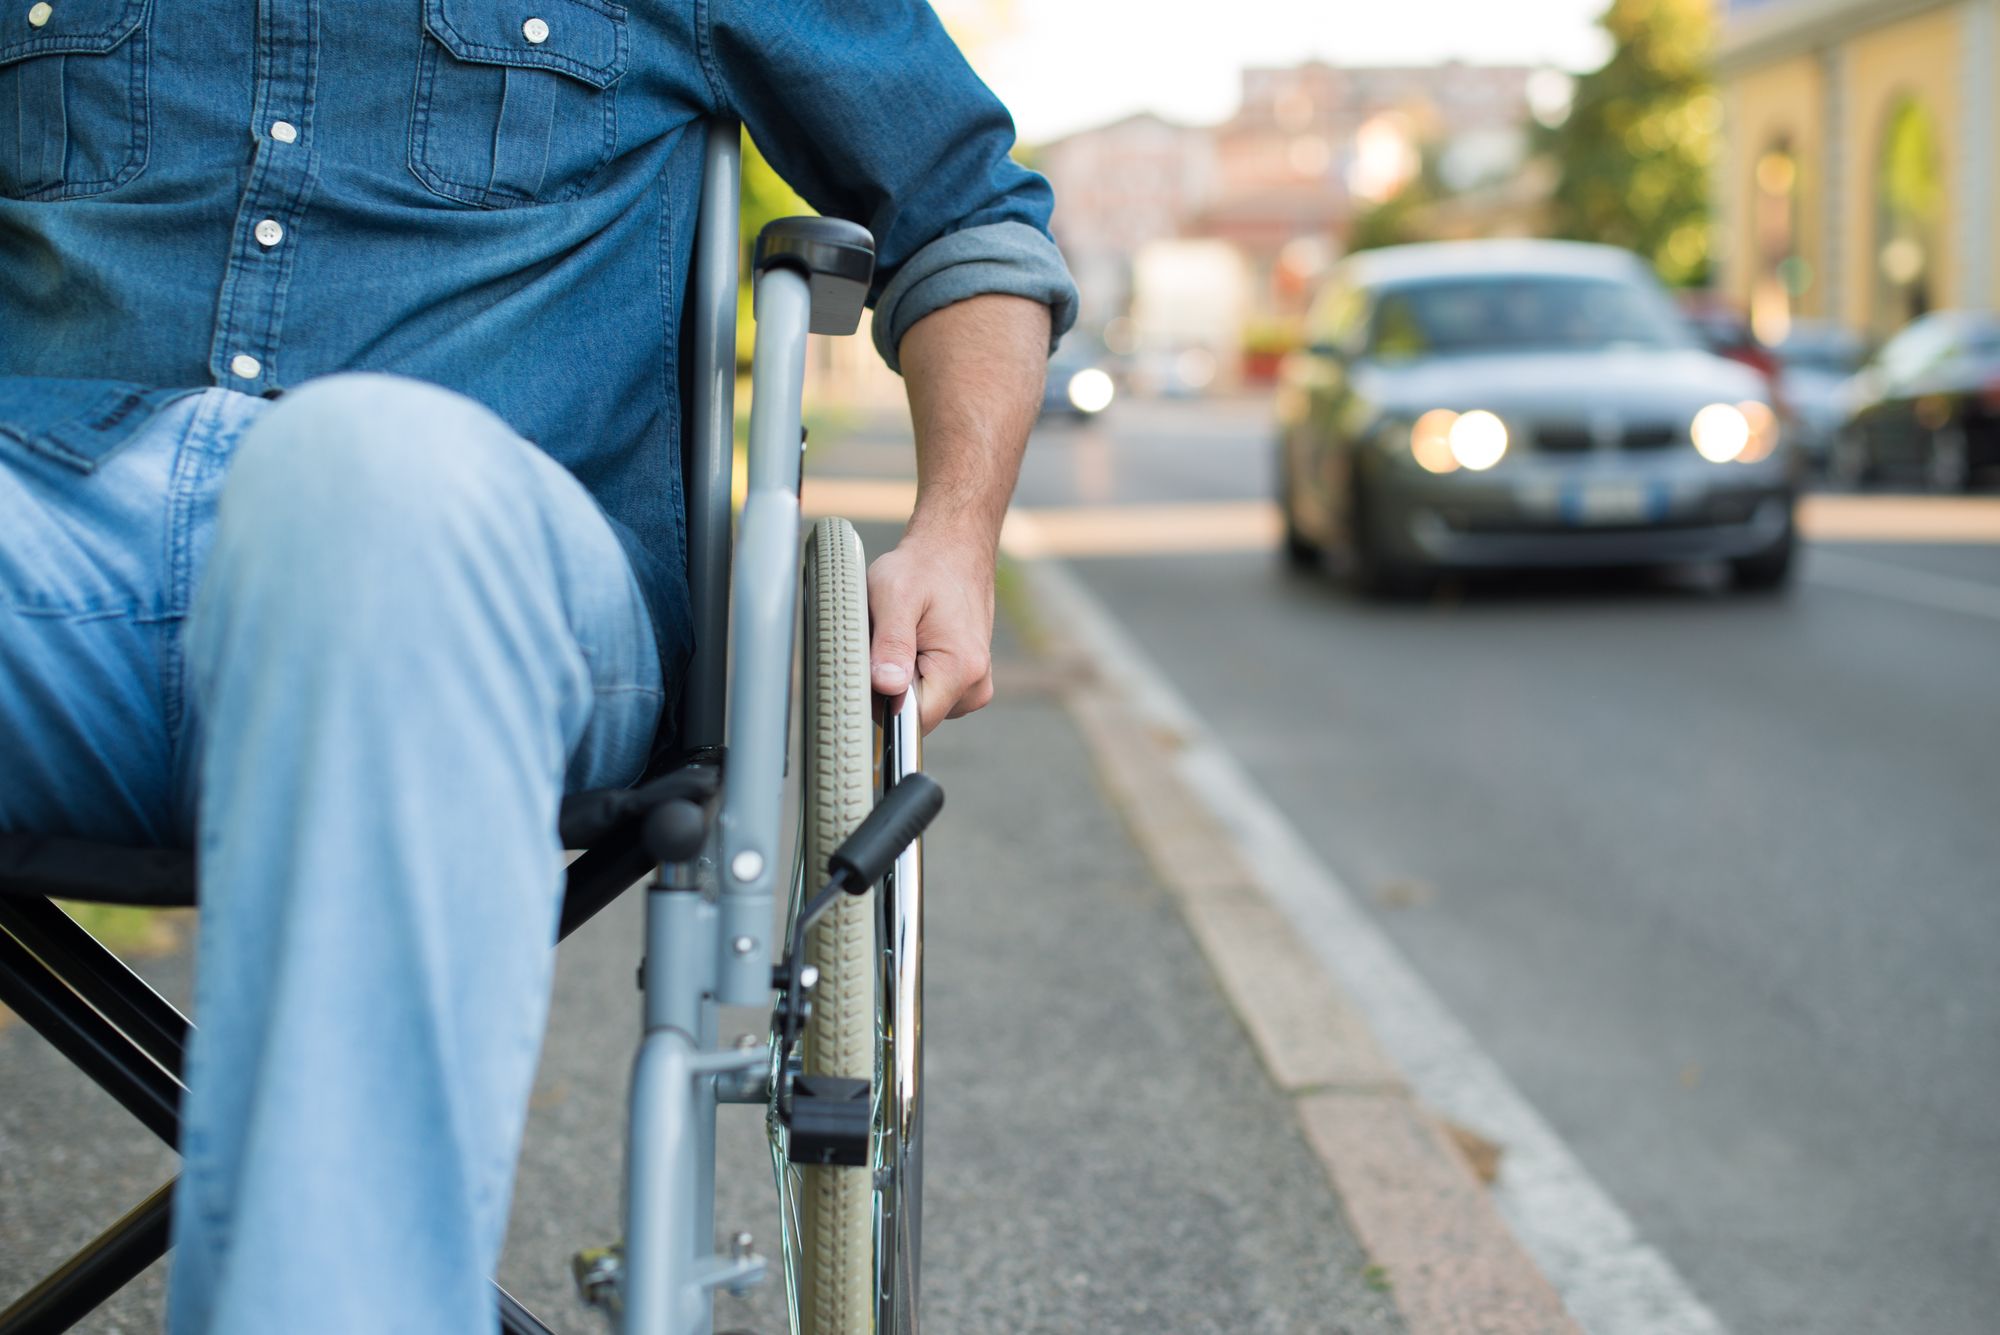 Detail of a man using a wheelchair in an urban street